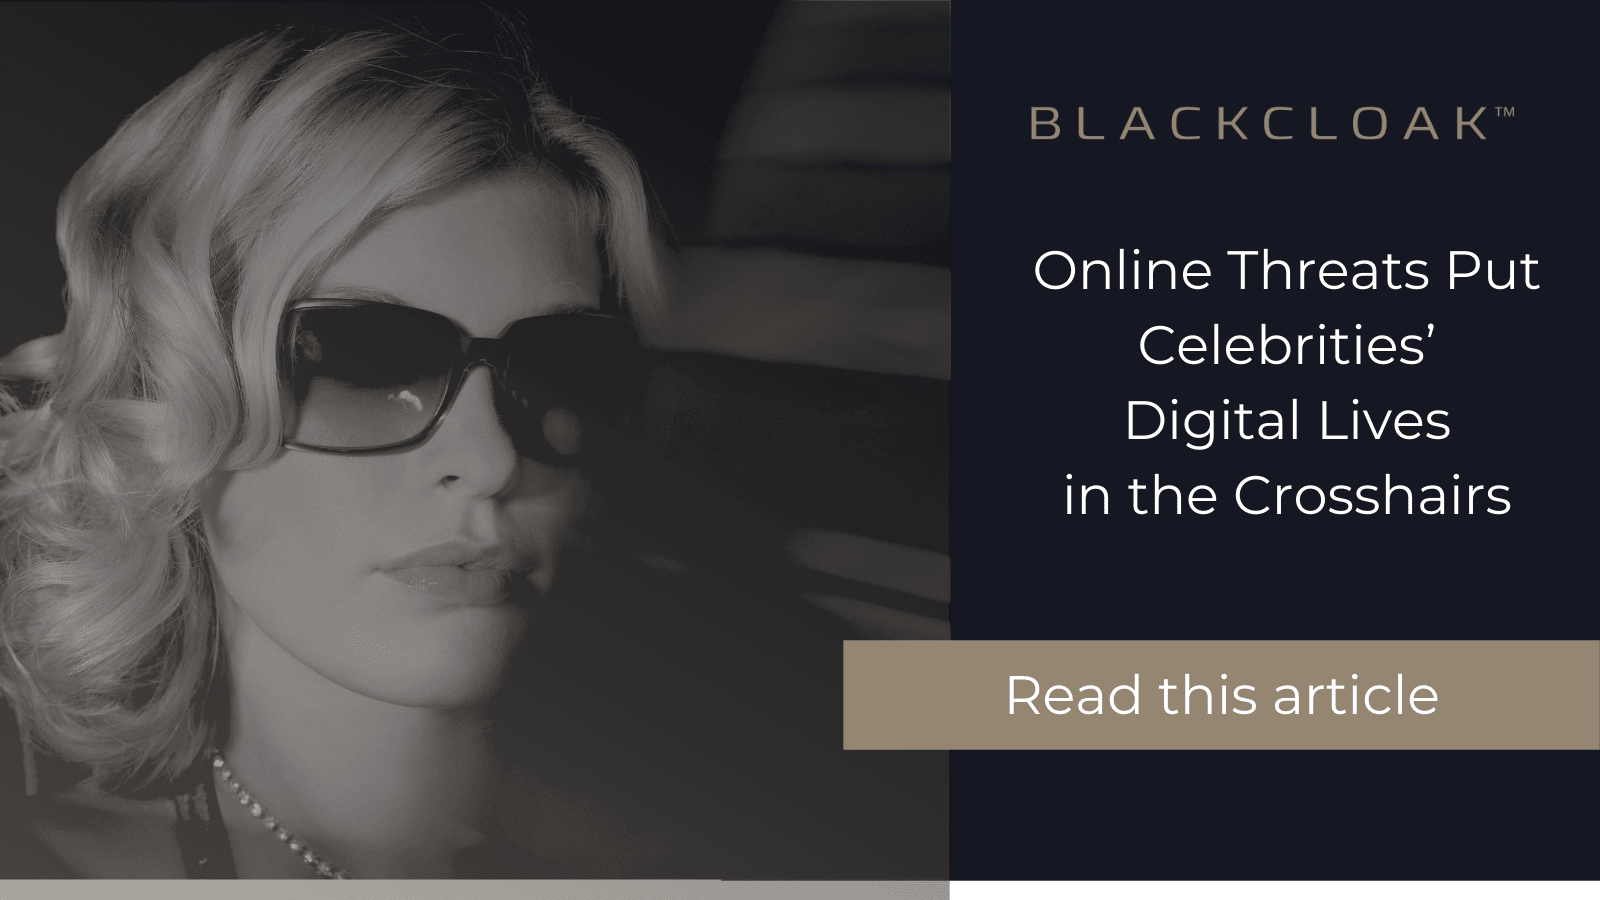 BlackCloak Celebrity Digital Risk Article Header Image